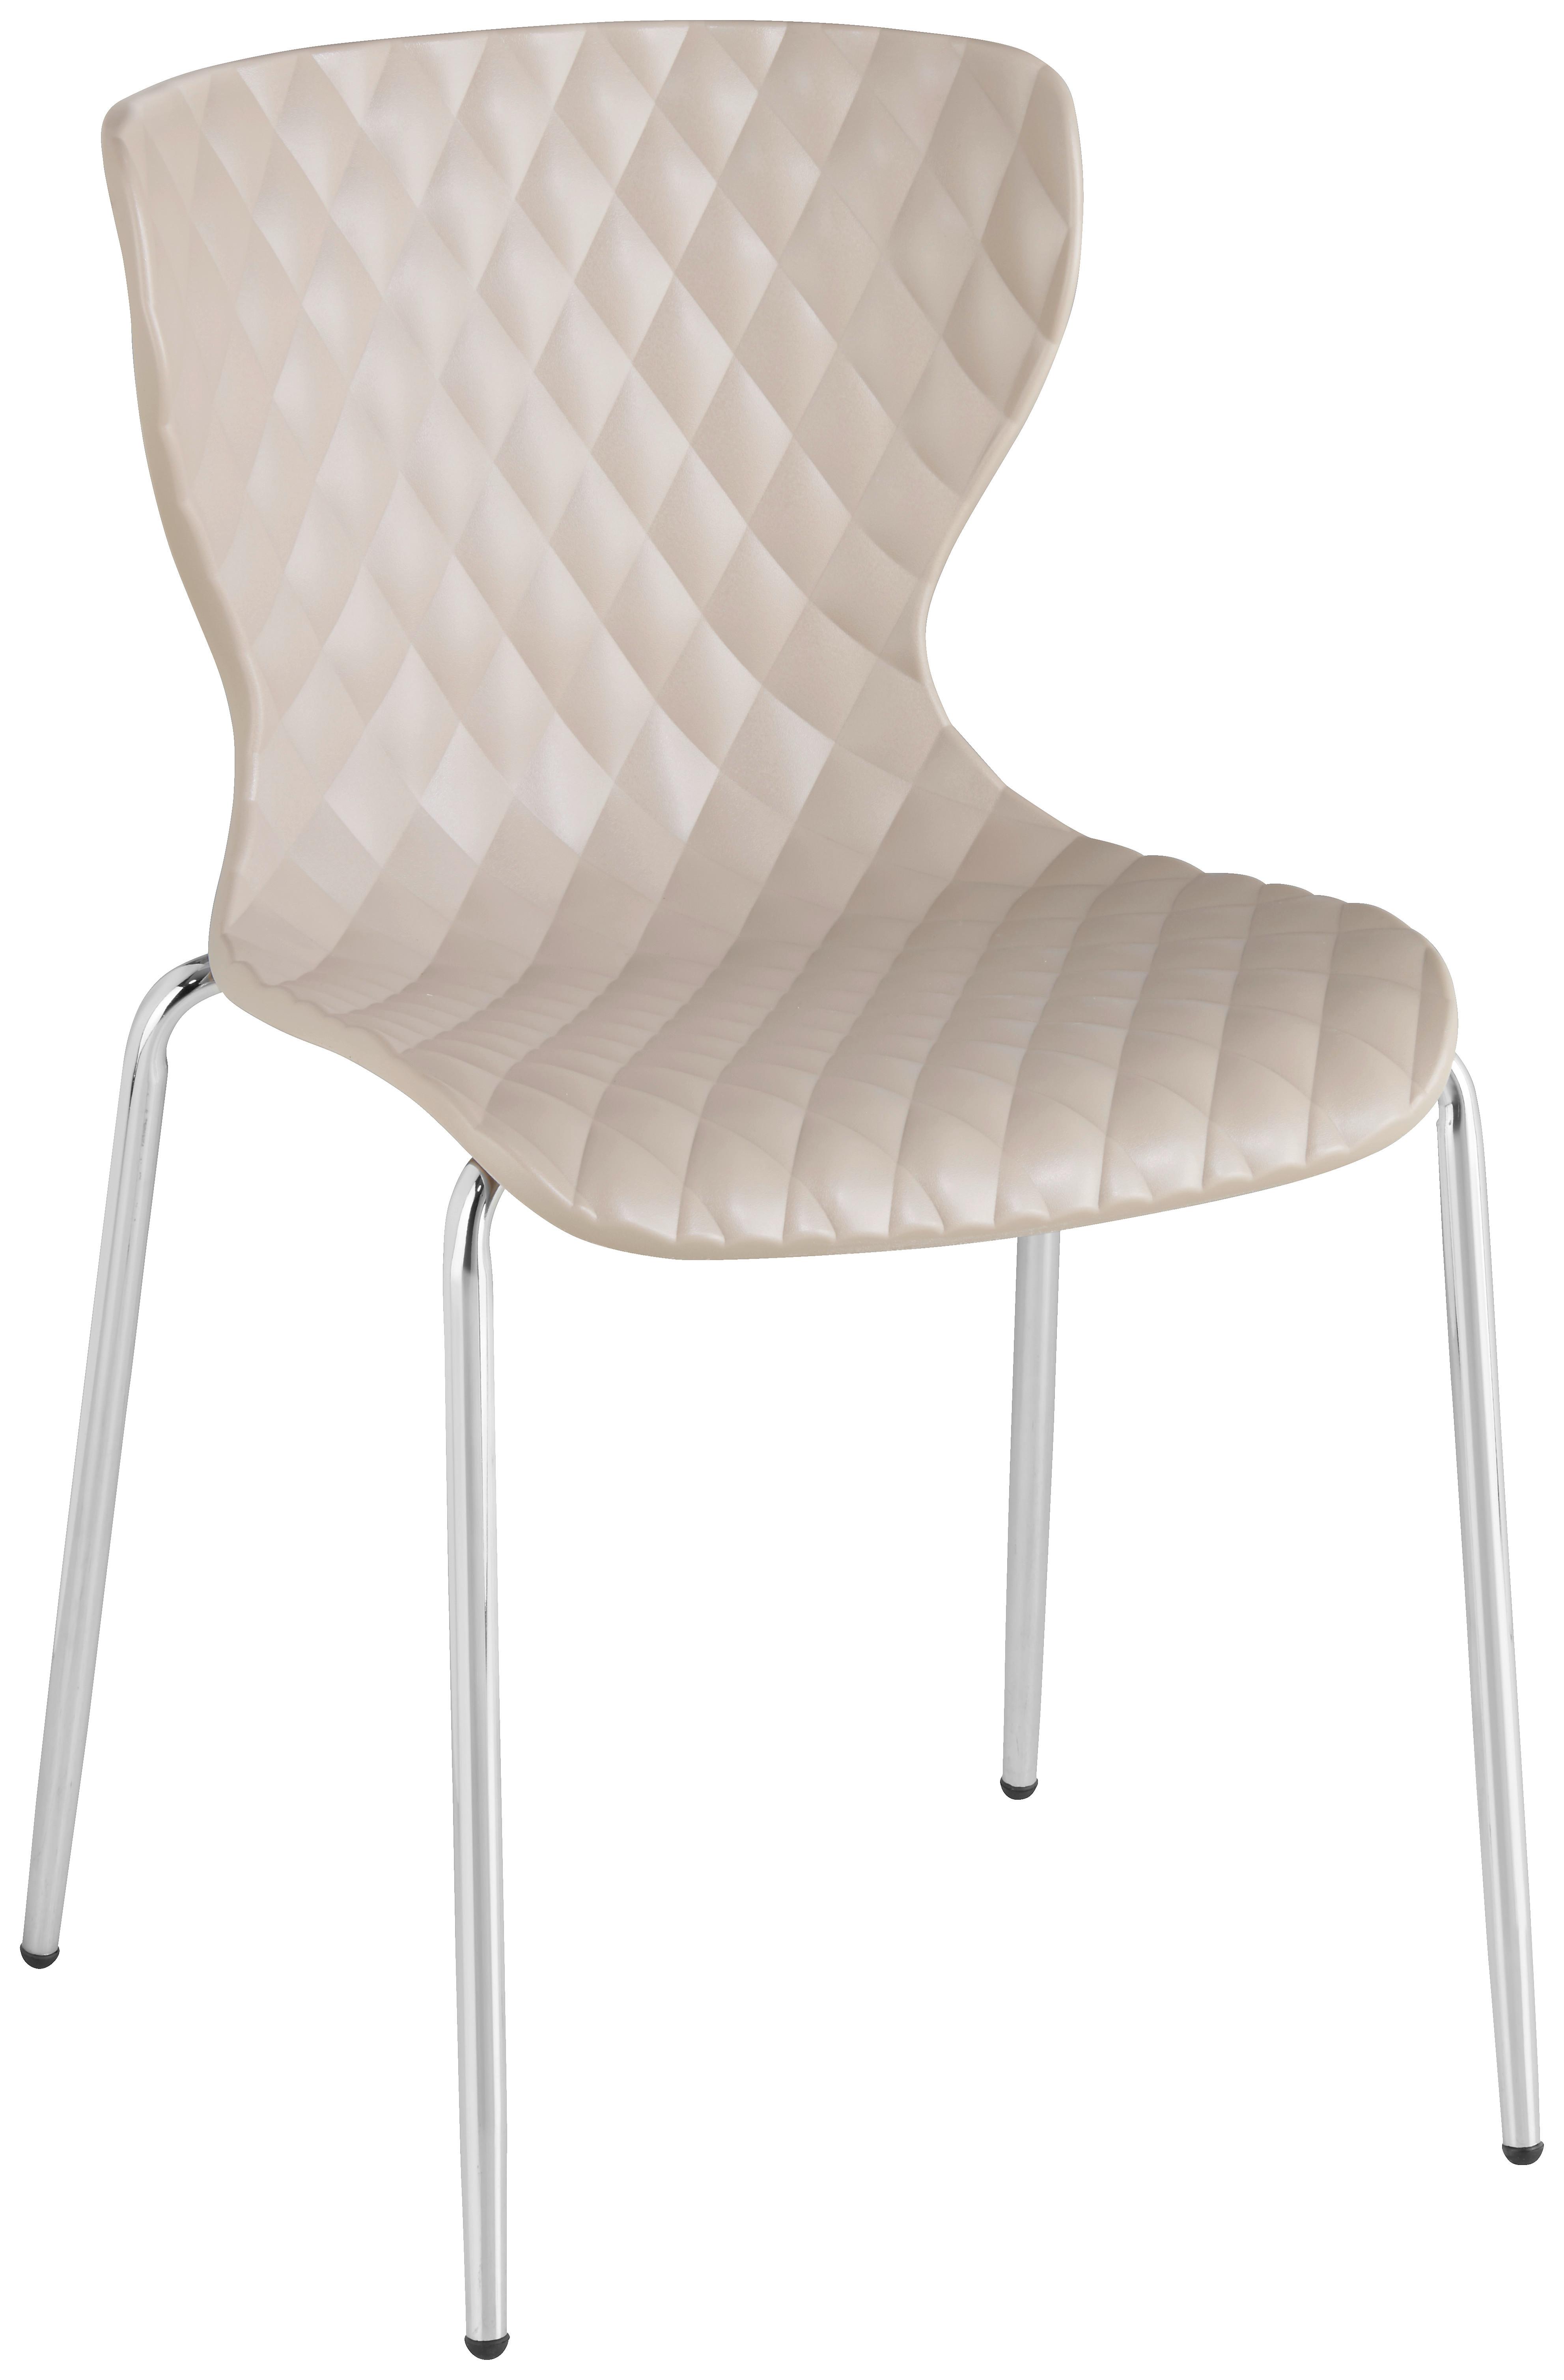 Konferencijska Stolica Enna - svijetlo smeđa/boje kroma, metal/plastika (44/80,5/51cm) - Modern Living